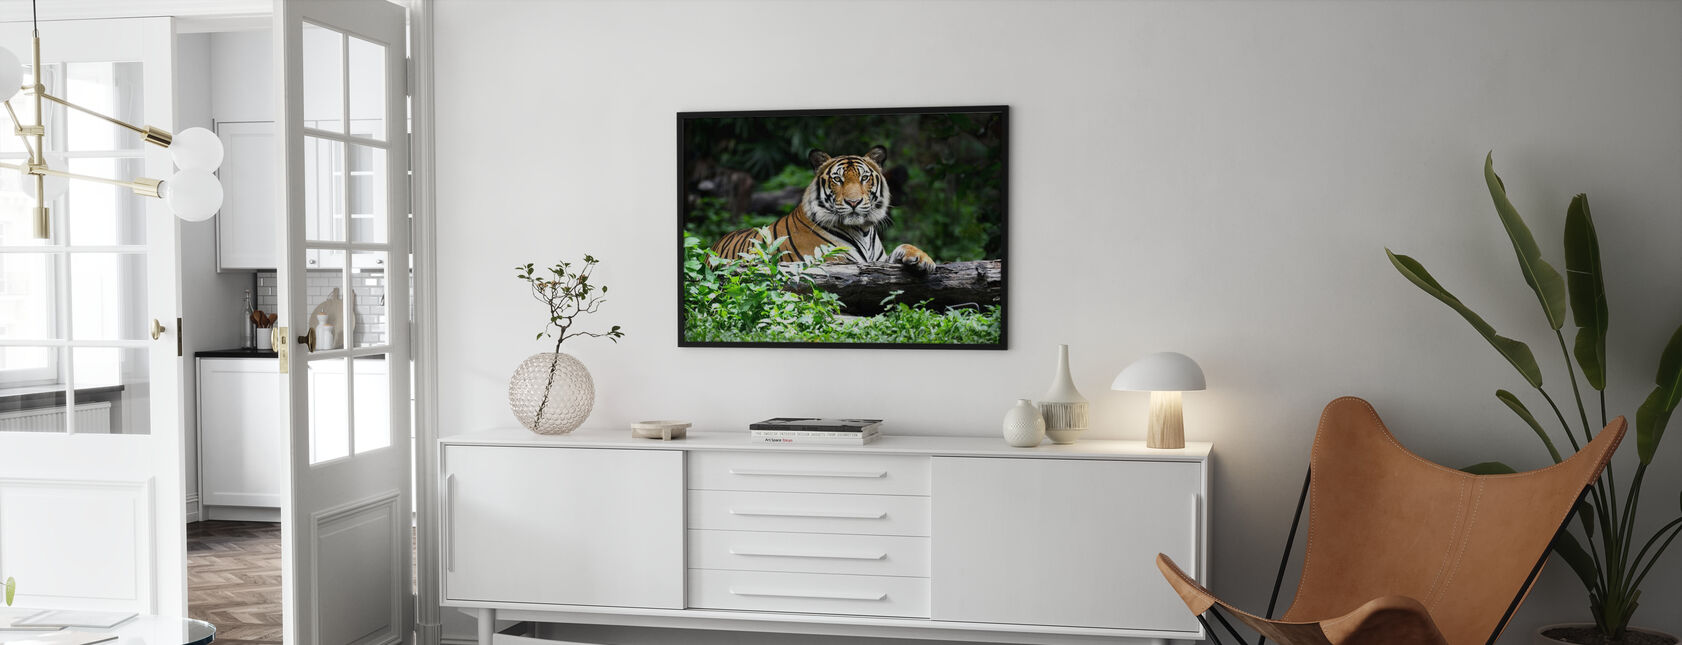 Bengal tiger - Plakat - Stue